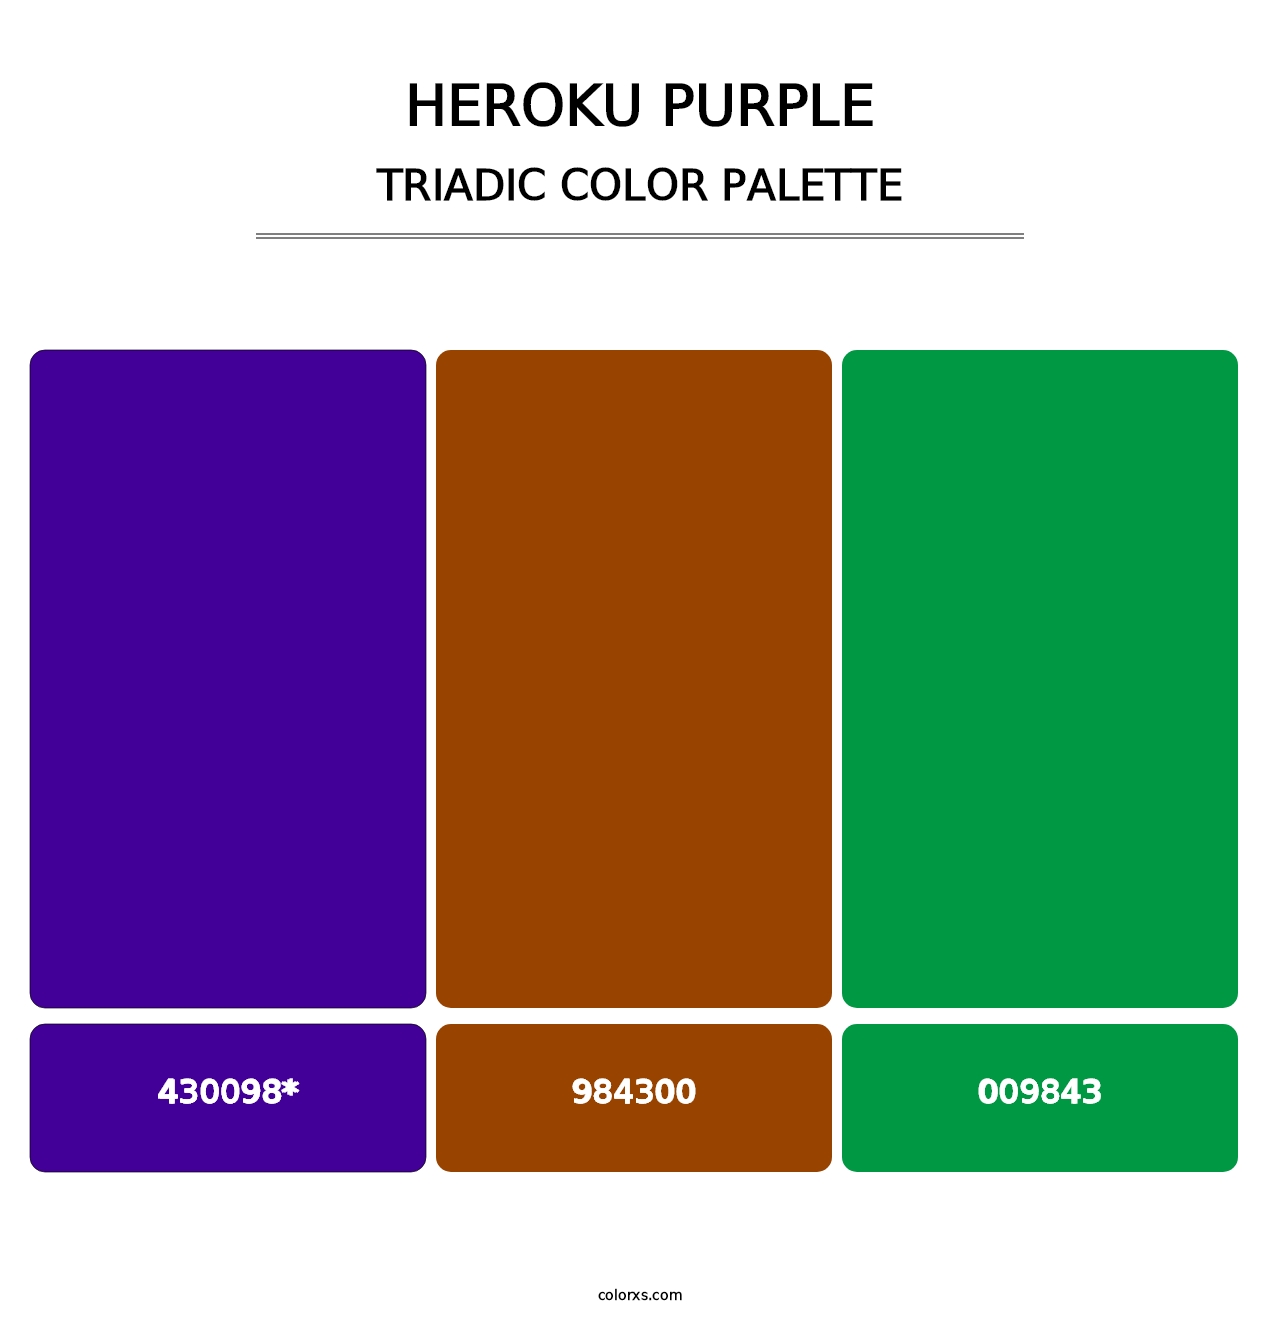 Heroku Purple - Triadic Color Palette